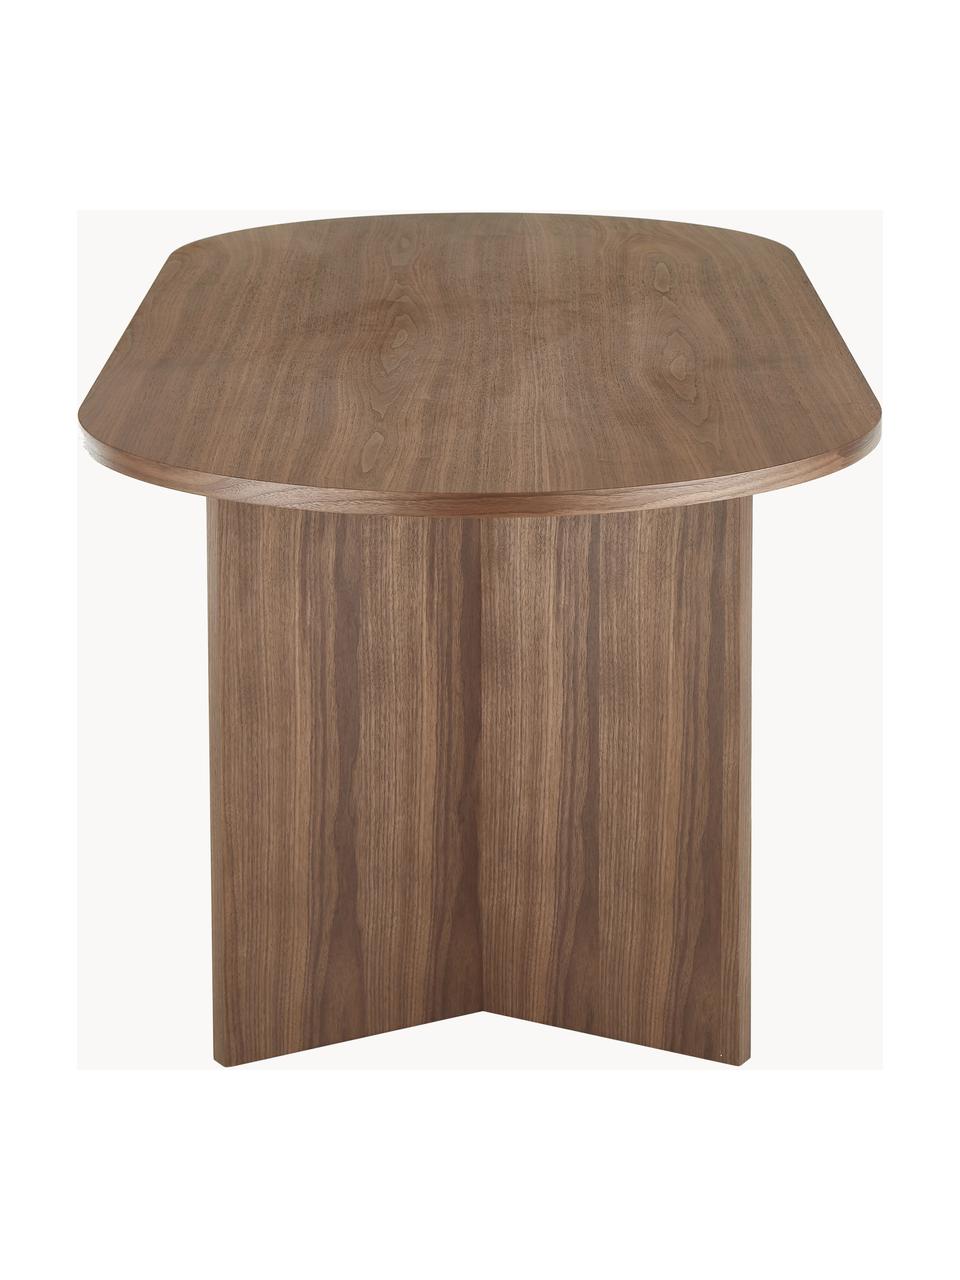 Oválny jedálenský stôl z dreva Toni, 200 x 90 cm, MDF-doska strednej hustoty s orechovou dyhou, lakovaná, Orechové drevo, Š 200 x V 90 cm